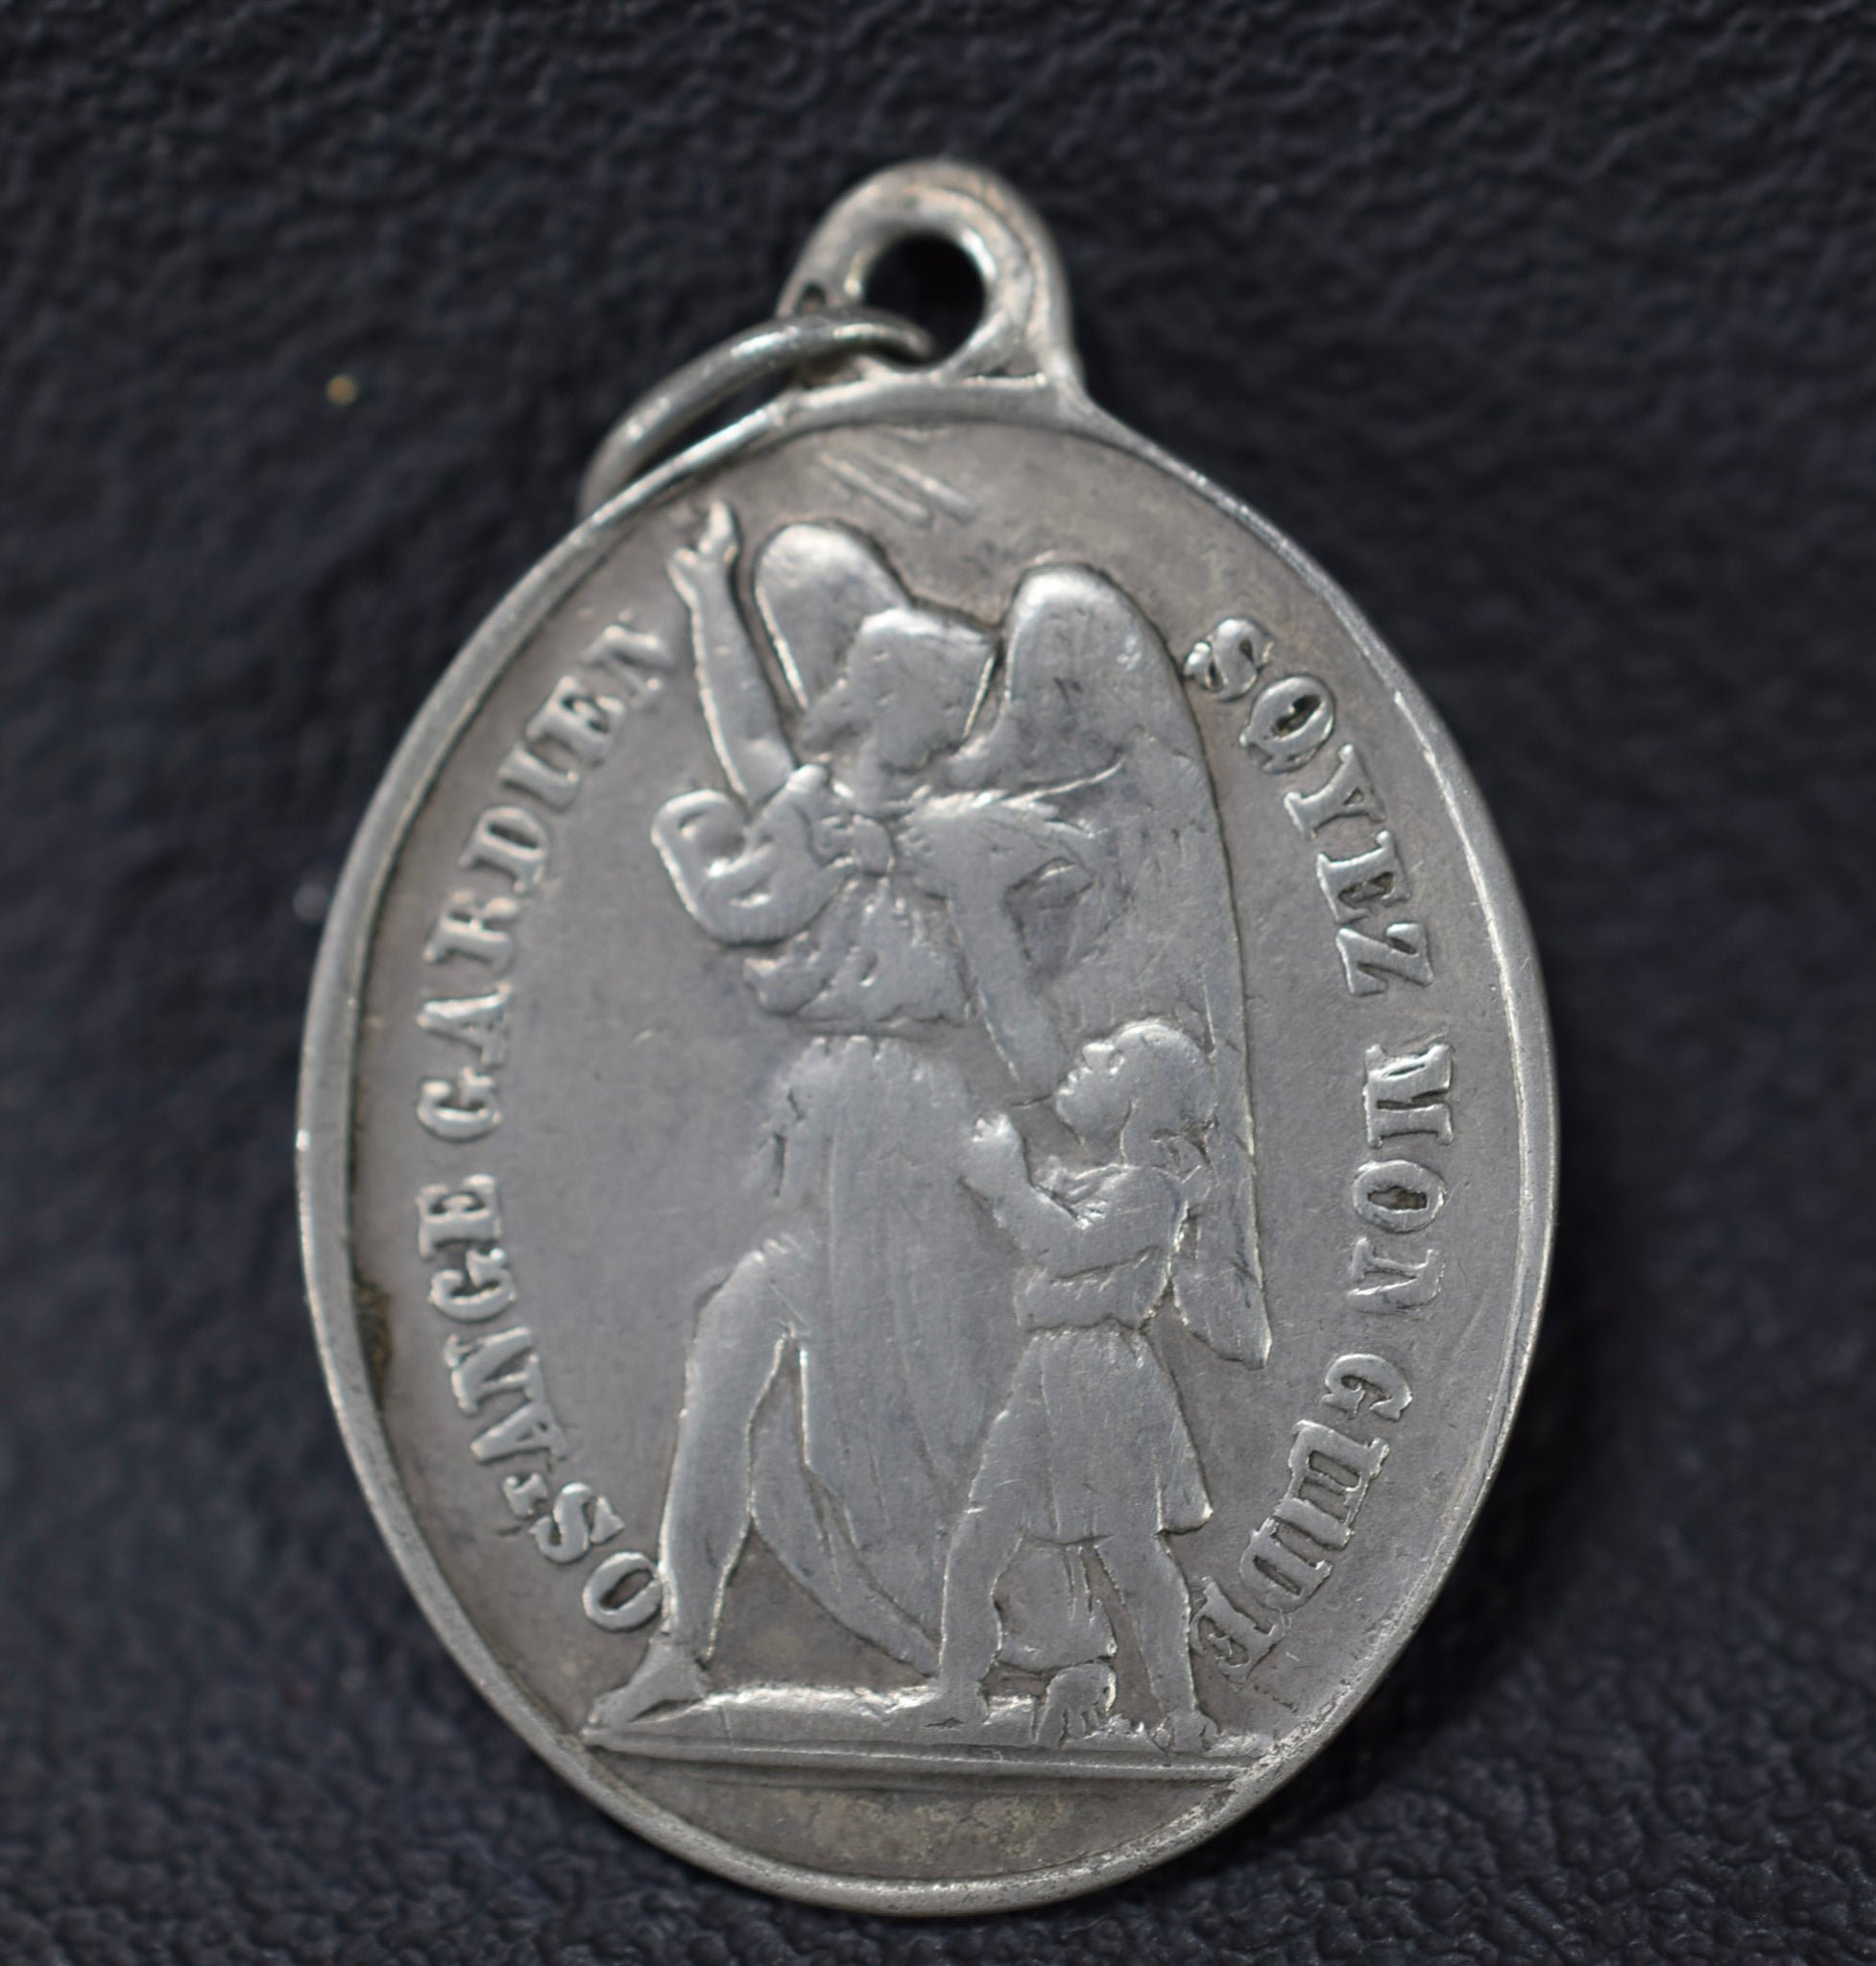 St Louis Of Gonzague Medal